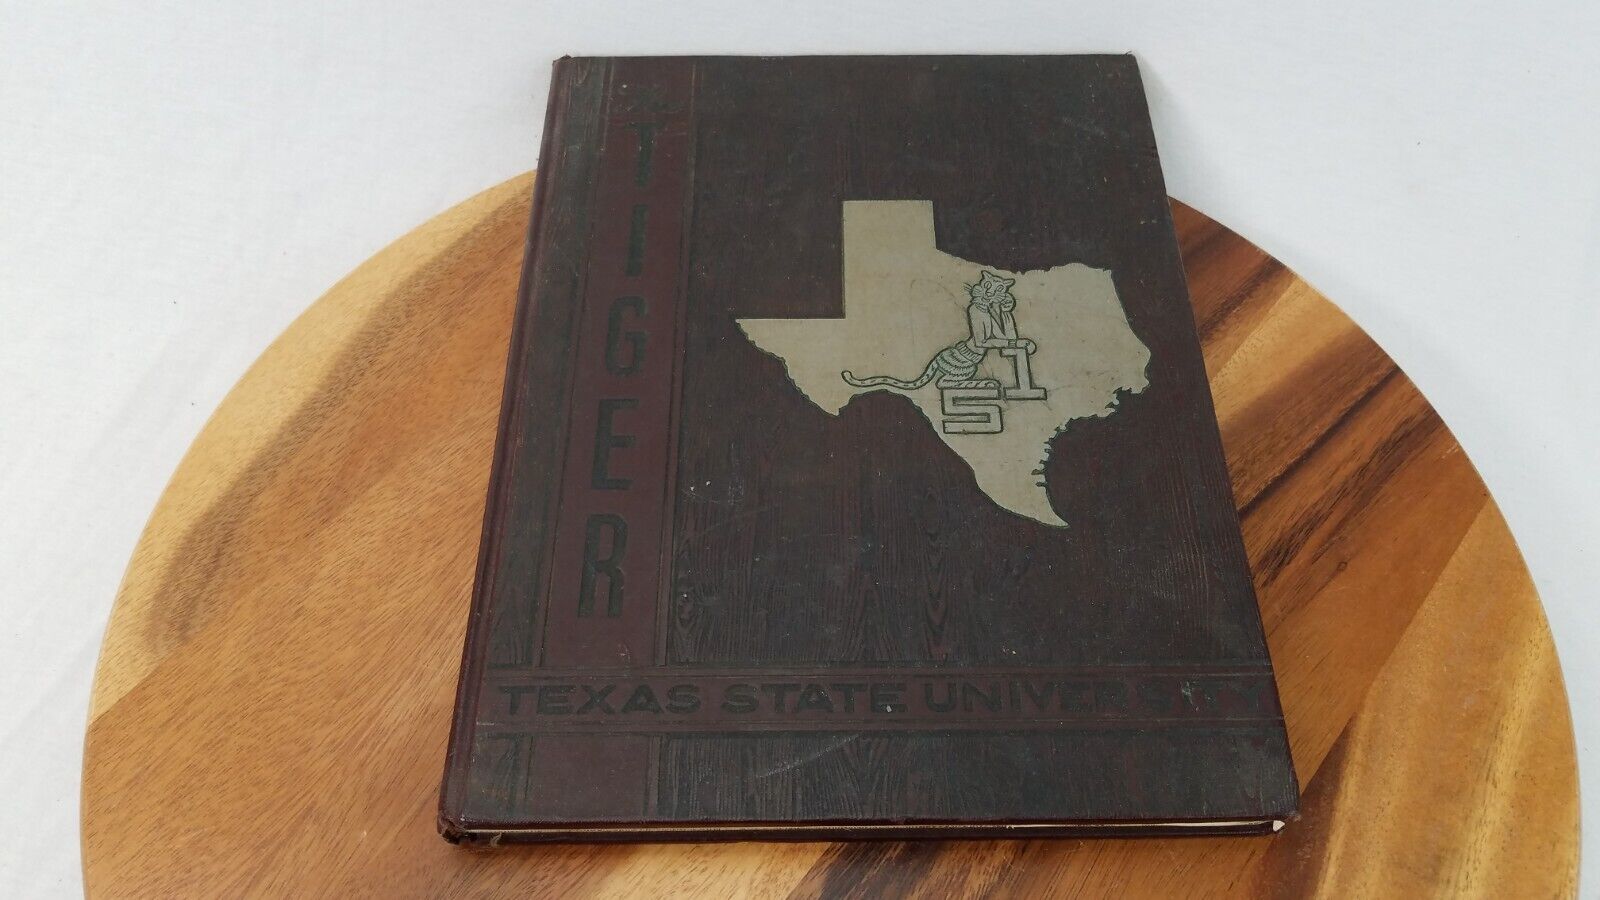 Tiger 1951 Yearbook Texas State University Houston, Texas